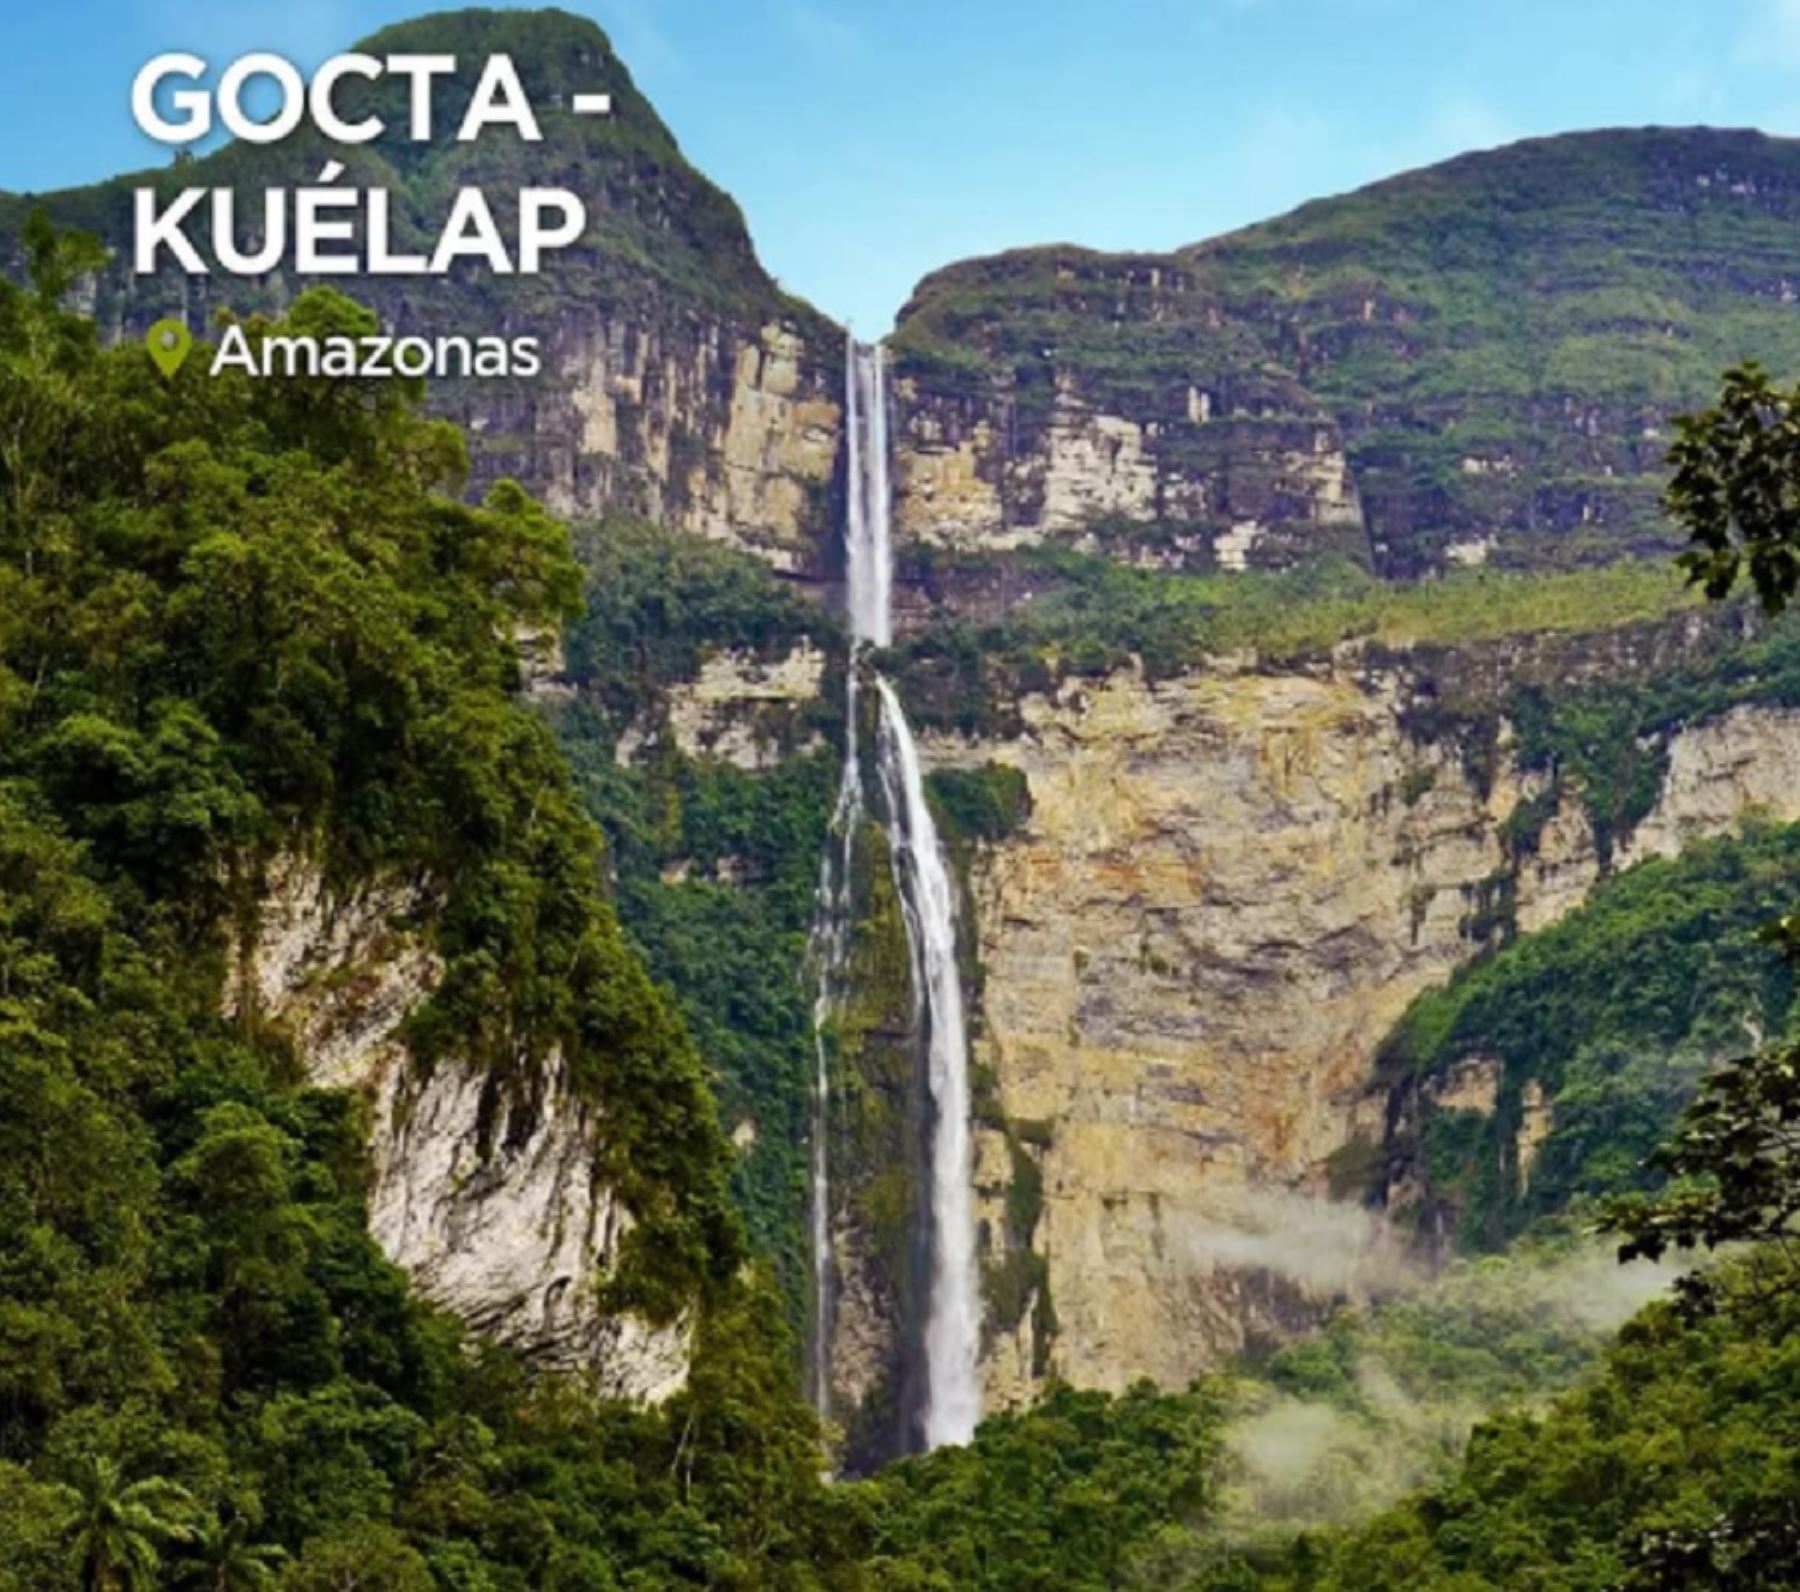 Gocta-Kuélap, en la región Amazonas, es uno de los nueve destinos turísticos del Perú que han sido considerados entre los 100 destinos más sostenibles del planeta por la organización internacional Green Destinations. Se trata de un reconocimiento mundial que distingue a los lugares turísticos más respetuosos con el ecosistema y un mínimo impacto sobre el ambiente y la cultura local. Foto: Mincetur